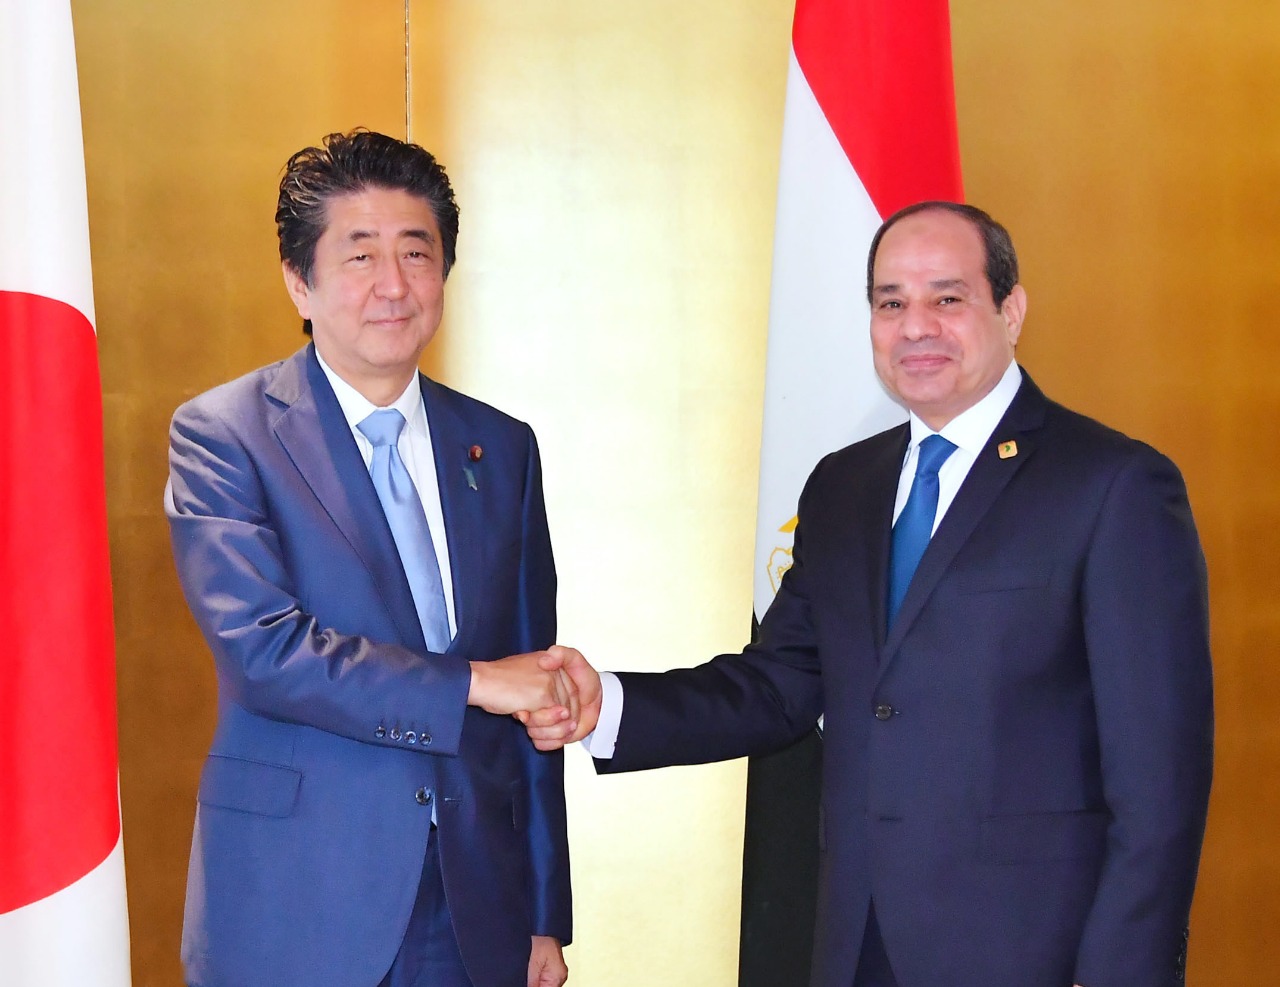   الرئيس السيسى يعقد مباحثات قمة موسعة مع رئيس وزراء اليابان بمدينة يوكوهاما